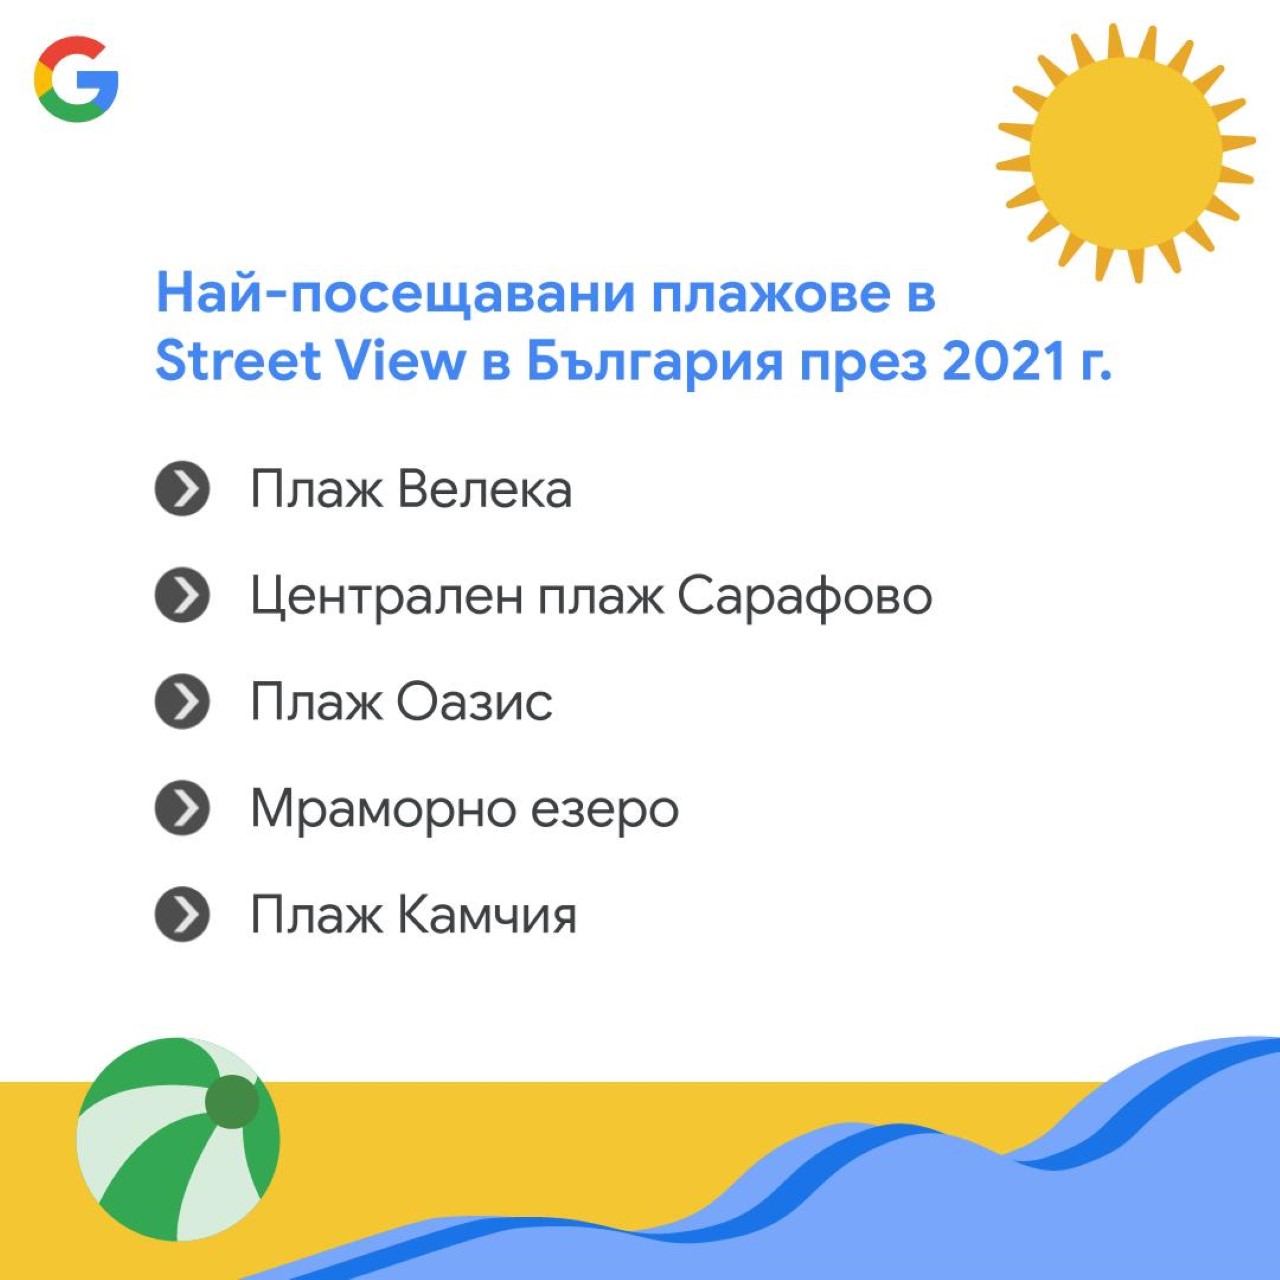 <p>Най-посещаваните български плажове в Street View през 2021 година</p>